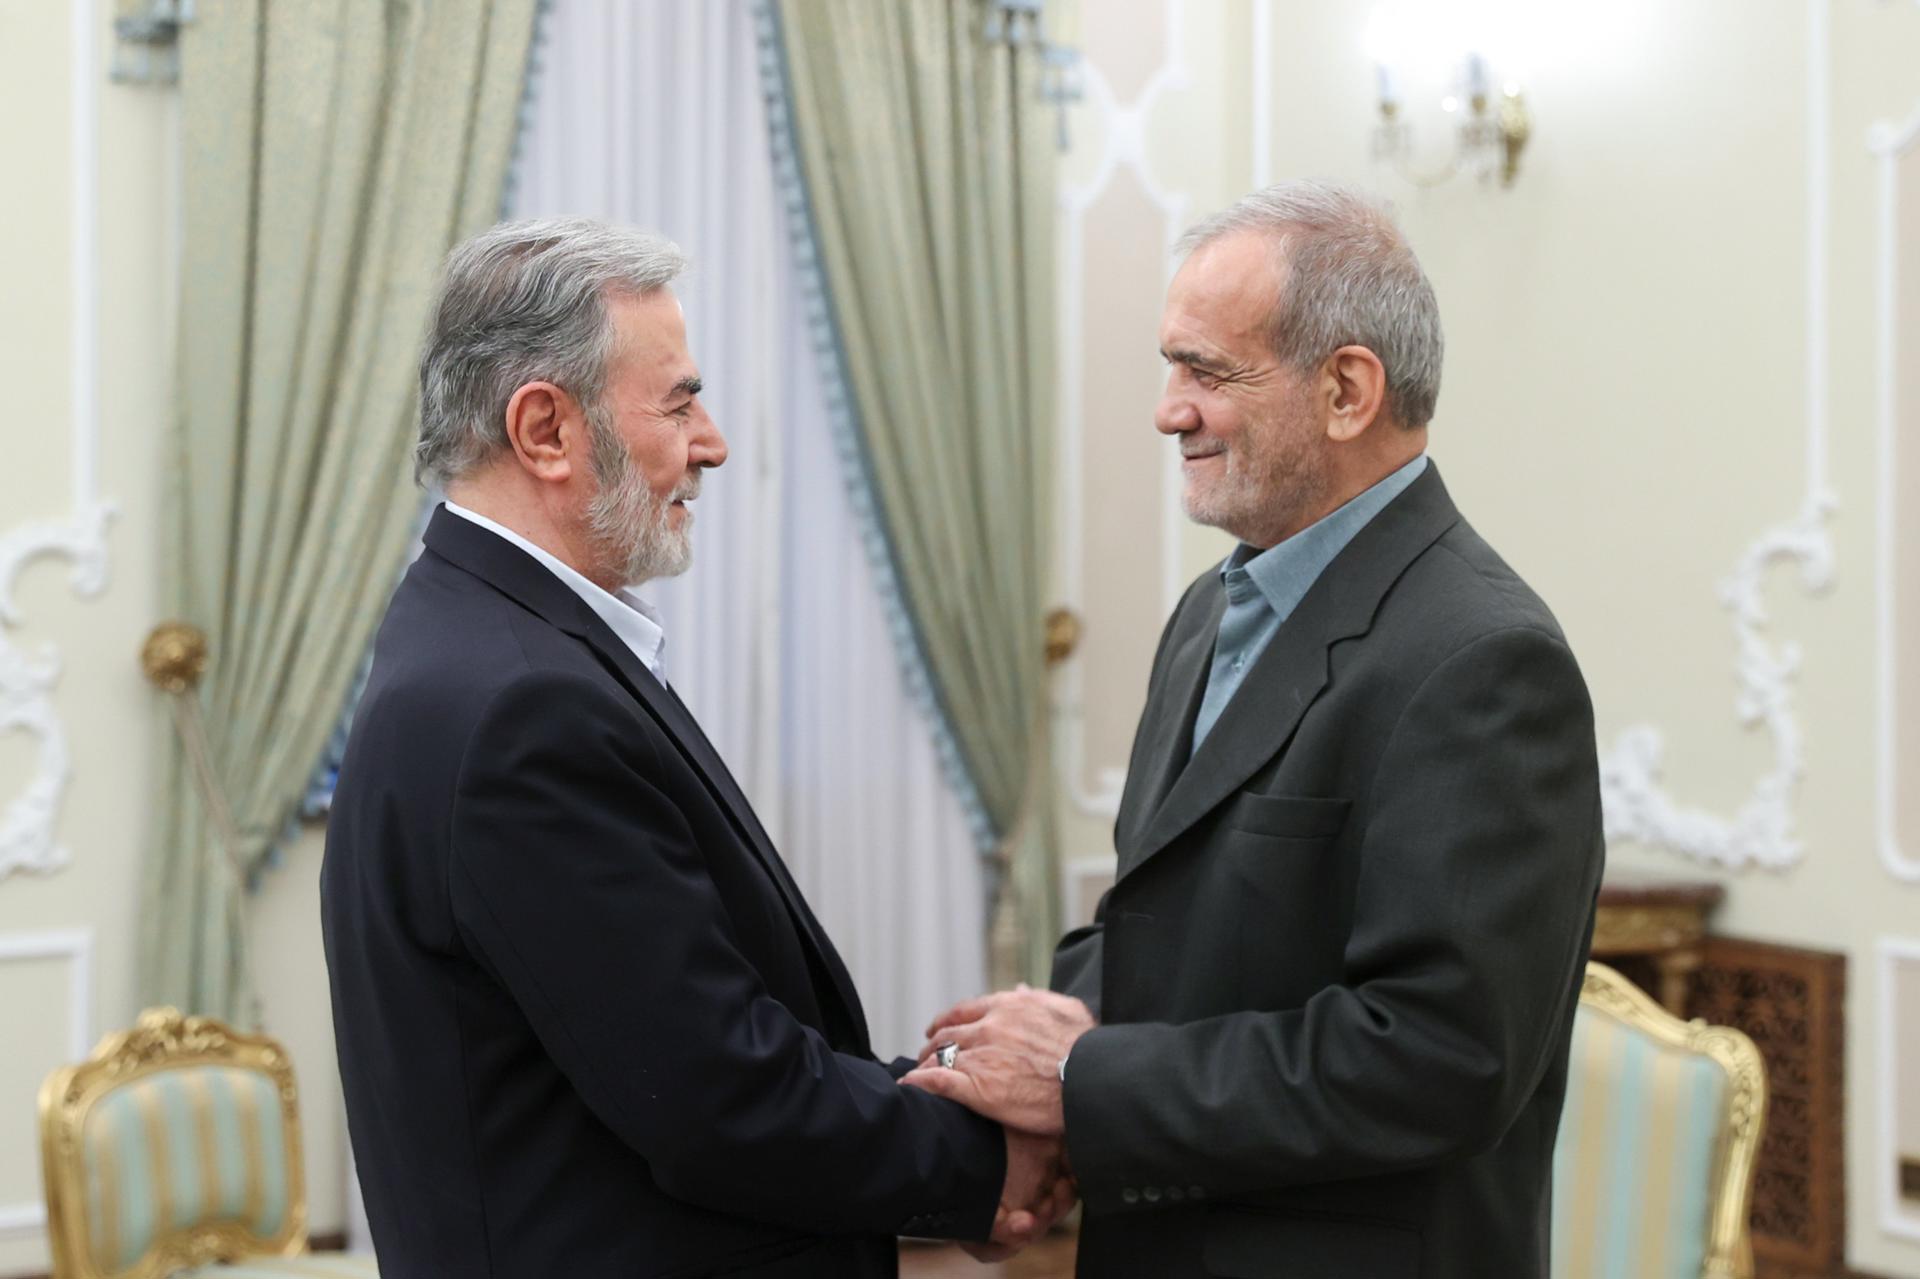 Una fotografía proporcionada por el presidente electo iraní Masoud Pezeshkian muestra a Pezeshkian (R) saludando a Ziyad al-Nakhalah, secretario general del Movimiento Jihad Islámico, en Teherán, Irán, el 29 de julio de 2024 (publicado el 30 de julio de 2024). Ziyad al-Nakhalah se encuentra en Teherán para asistir a la toma de posesión de Pezeshkian como presidente de Irán el 30 de julio. (Teherán) EFE/EPA/PRESIDENTE ELECTO DE IRÁN FOLLETO FOLLETO SÓLO PARA USO EDITORIAL/NO VENTAS